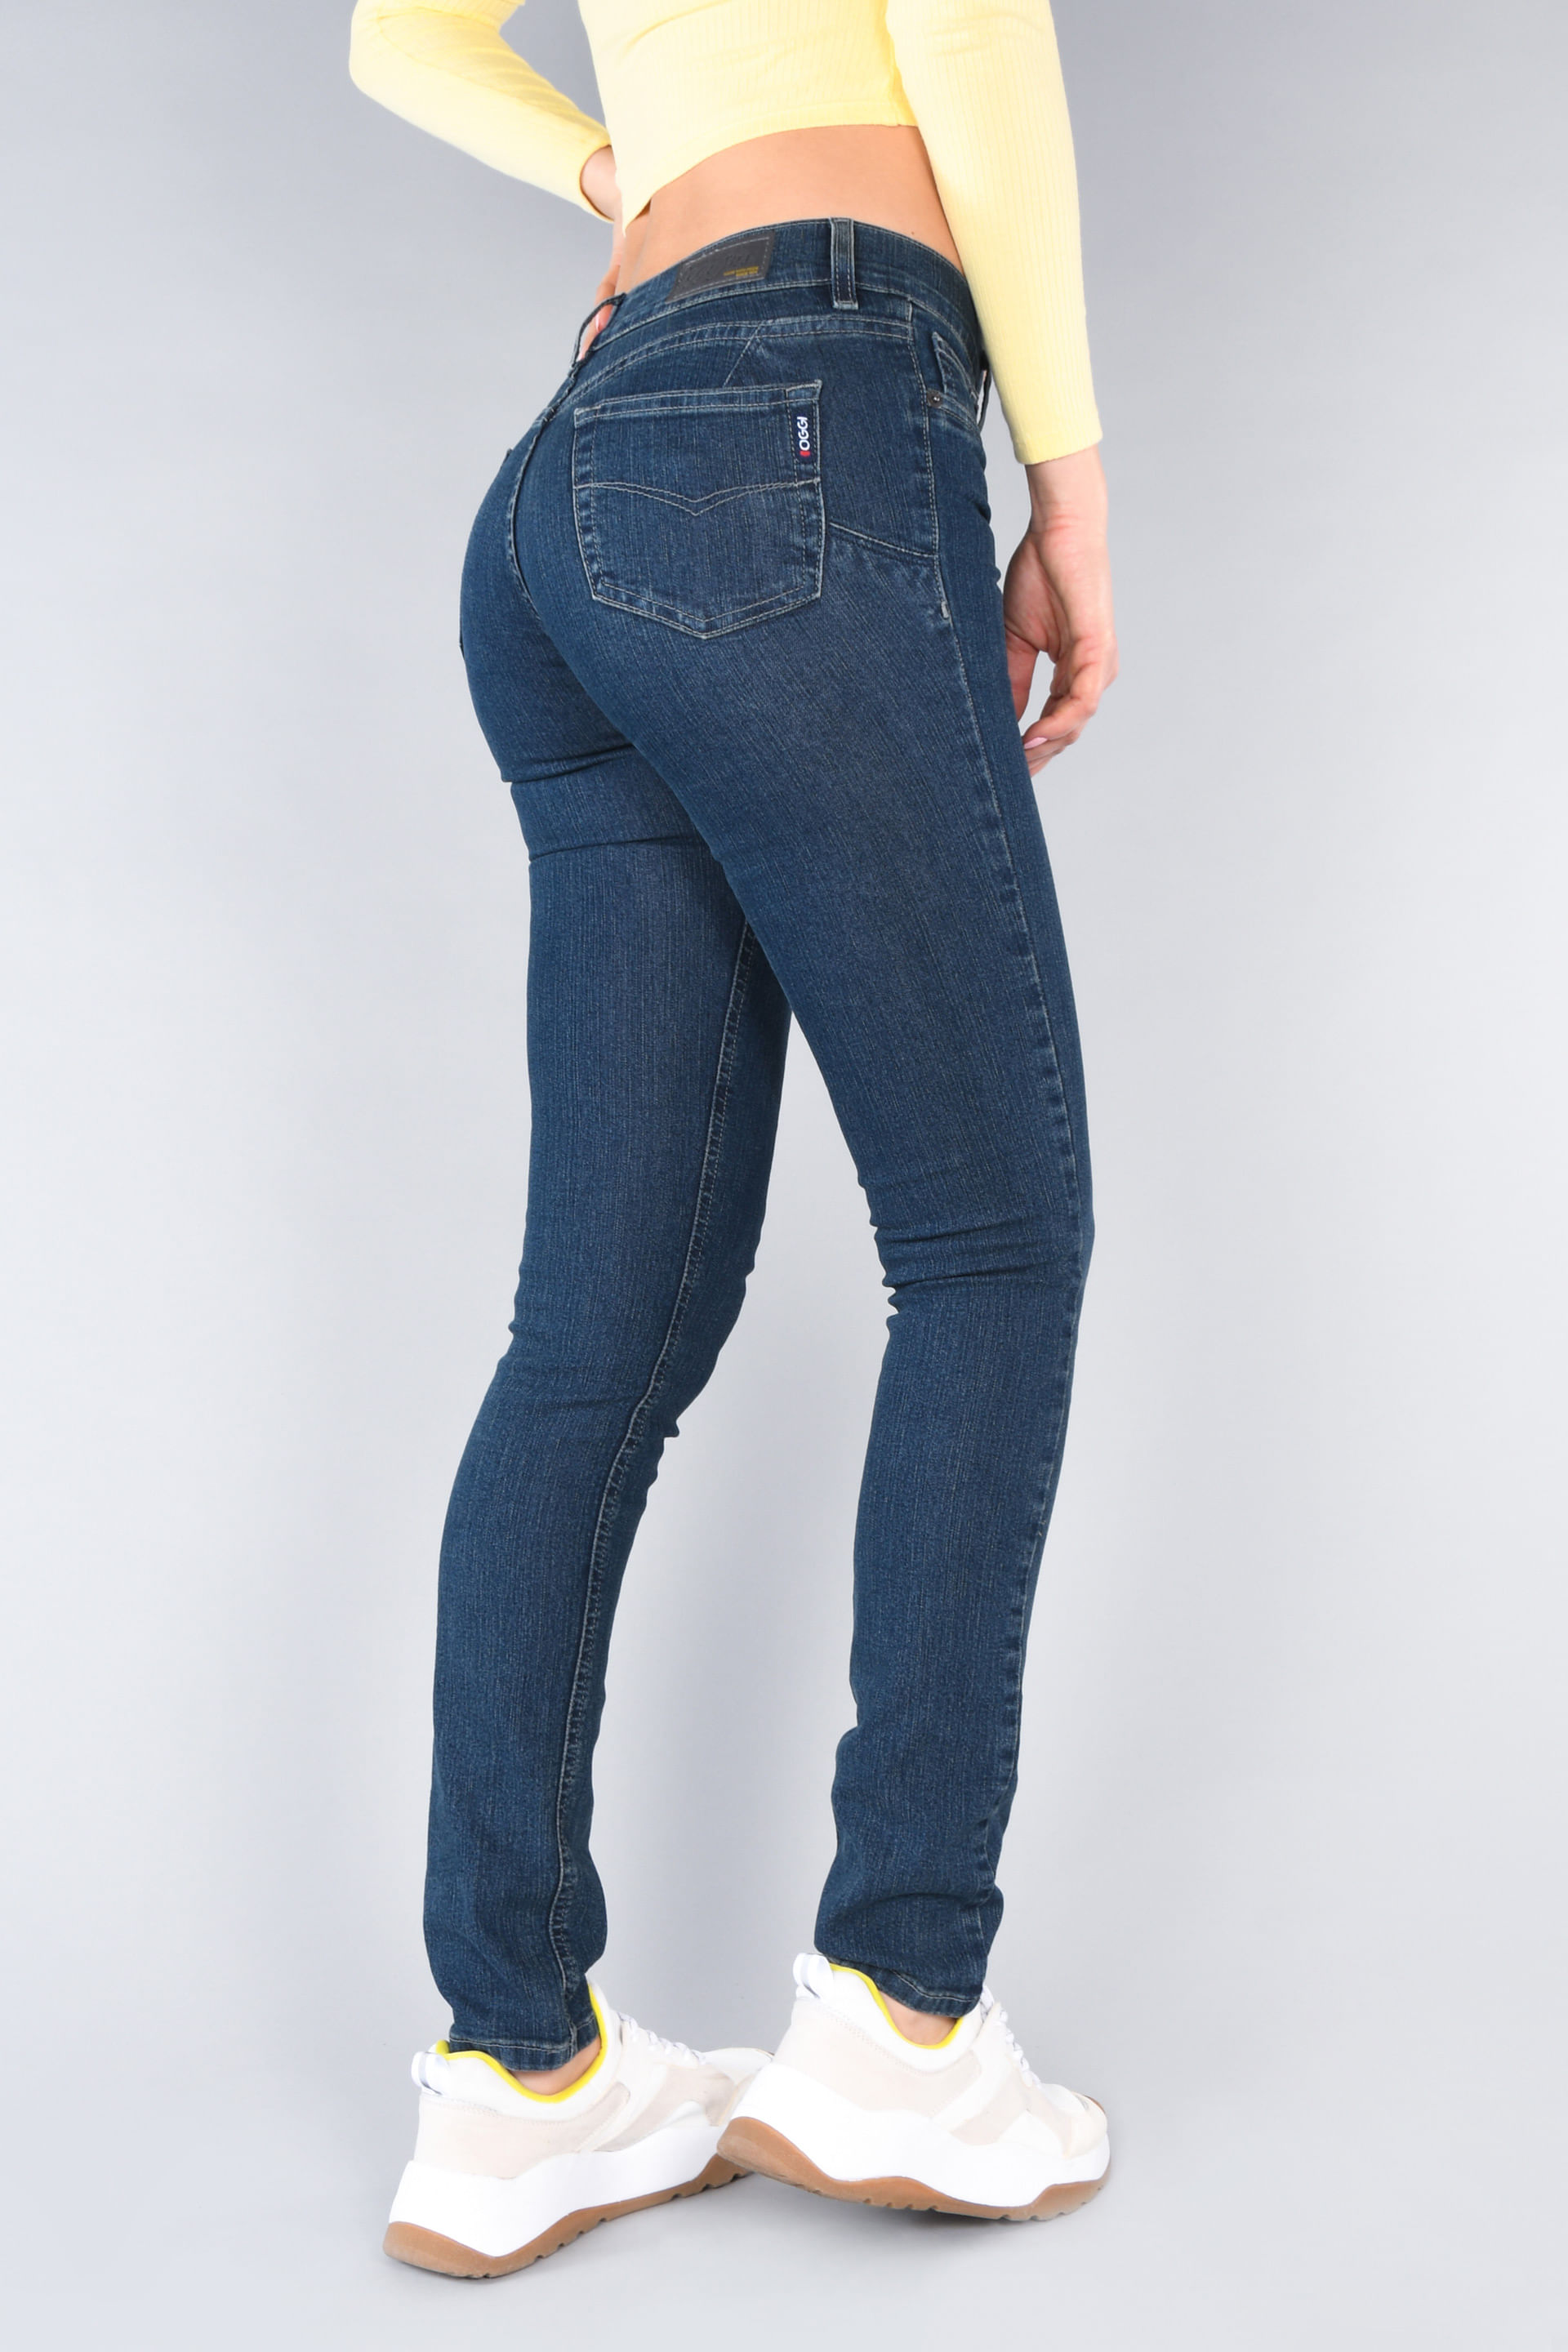 Jeans Slim Oggi - Milah Mujer Azul Oscuro 106050